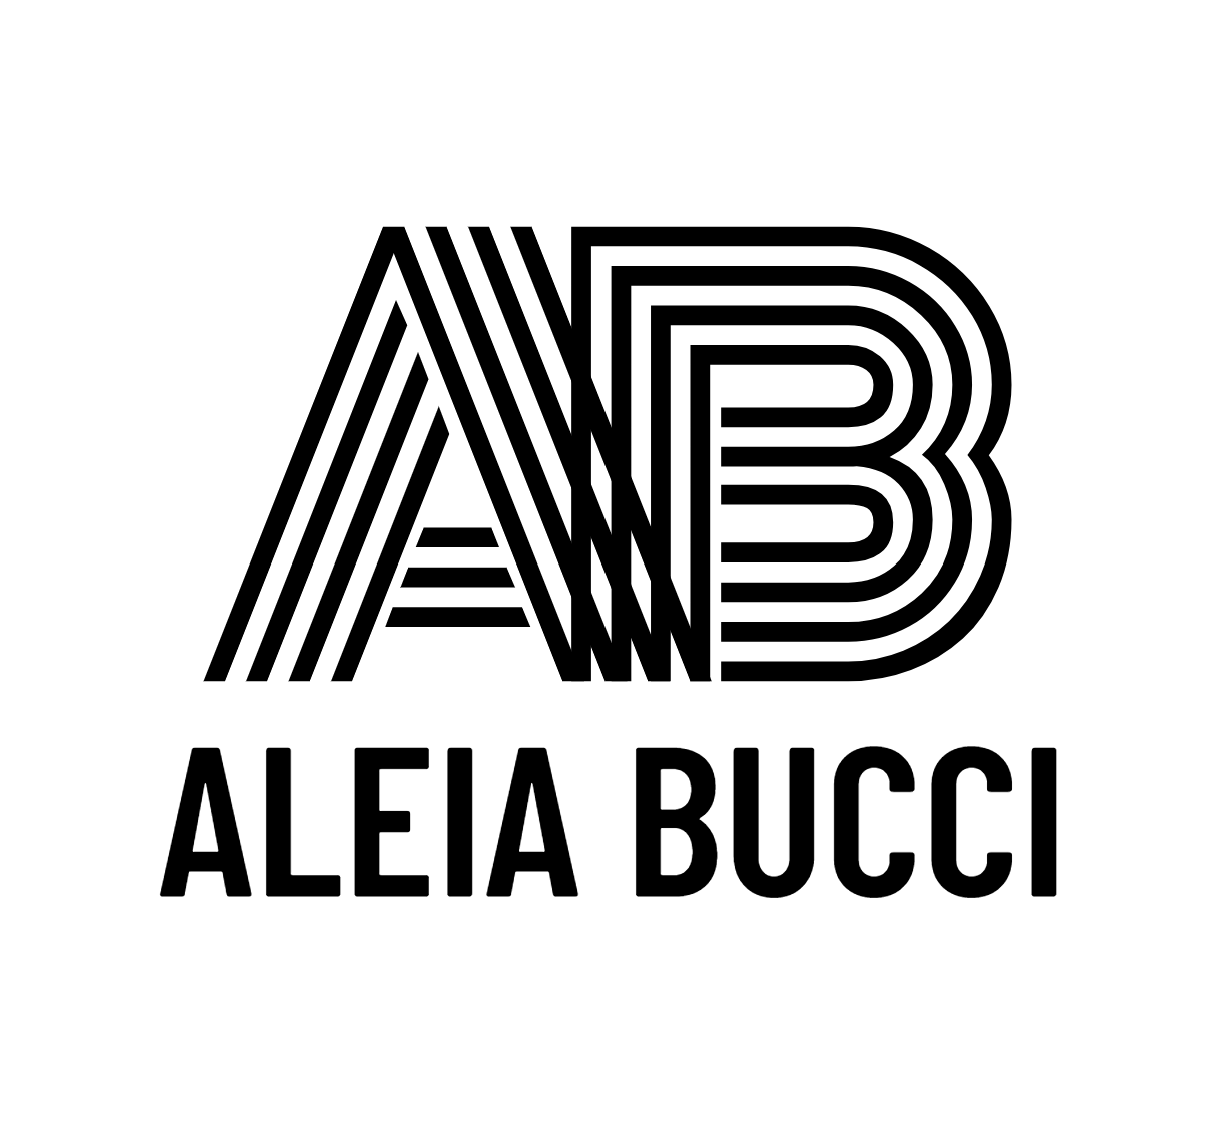 Aleia Bucci